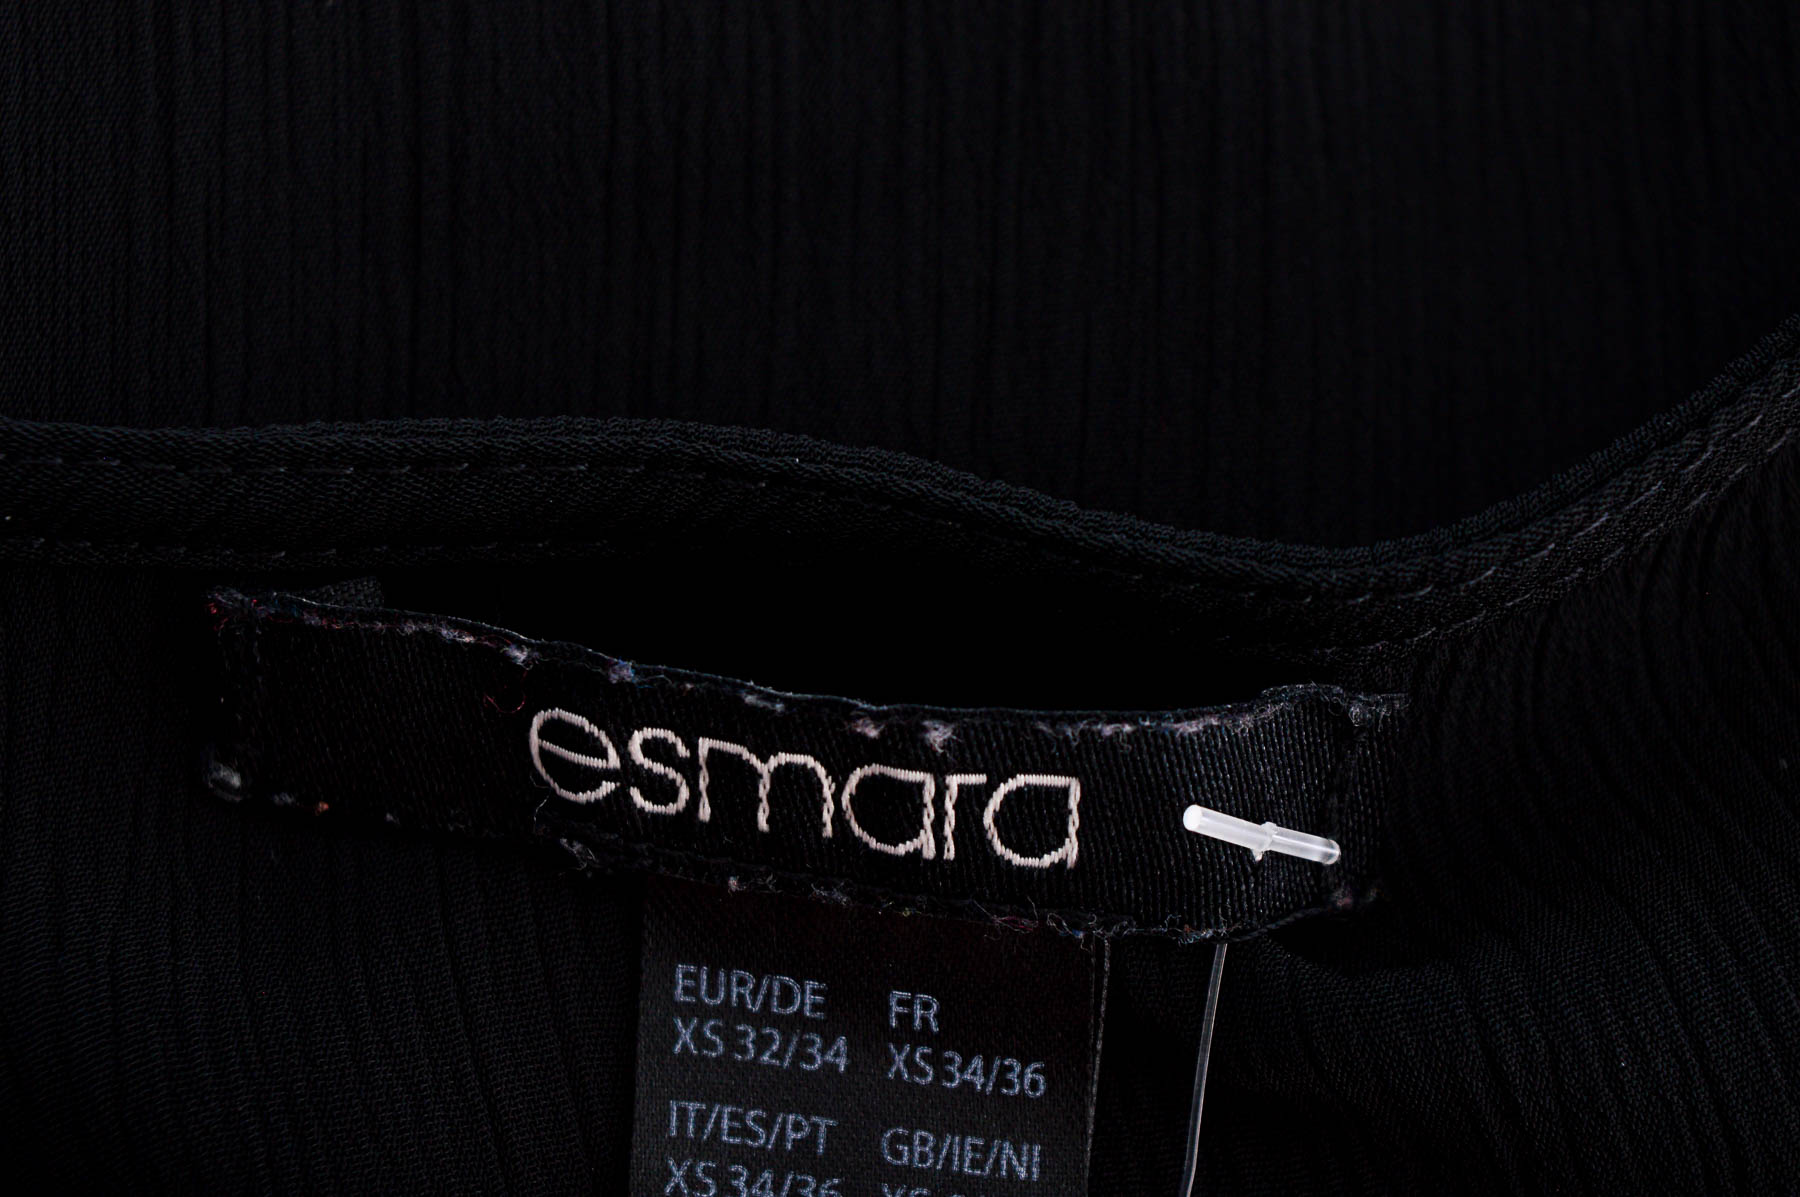 Γυναικείо πουκάμισο - Esmara - 2